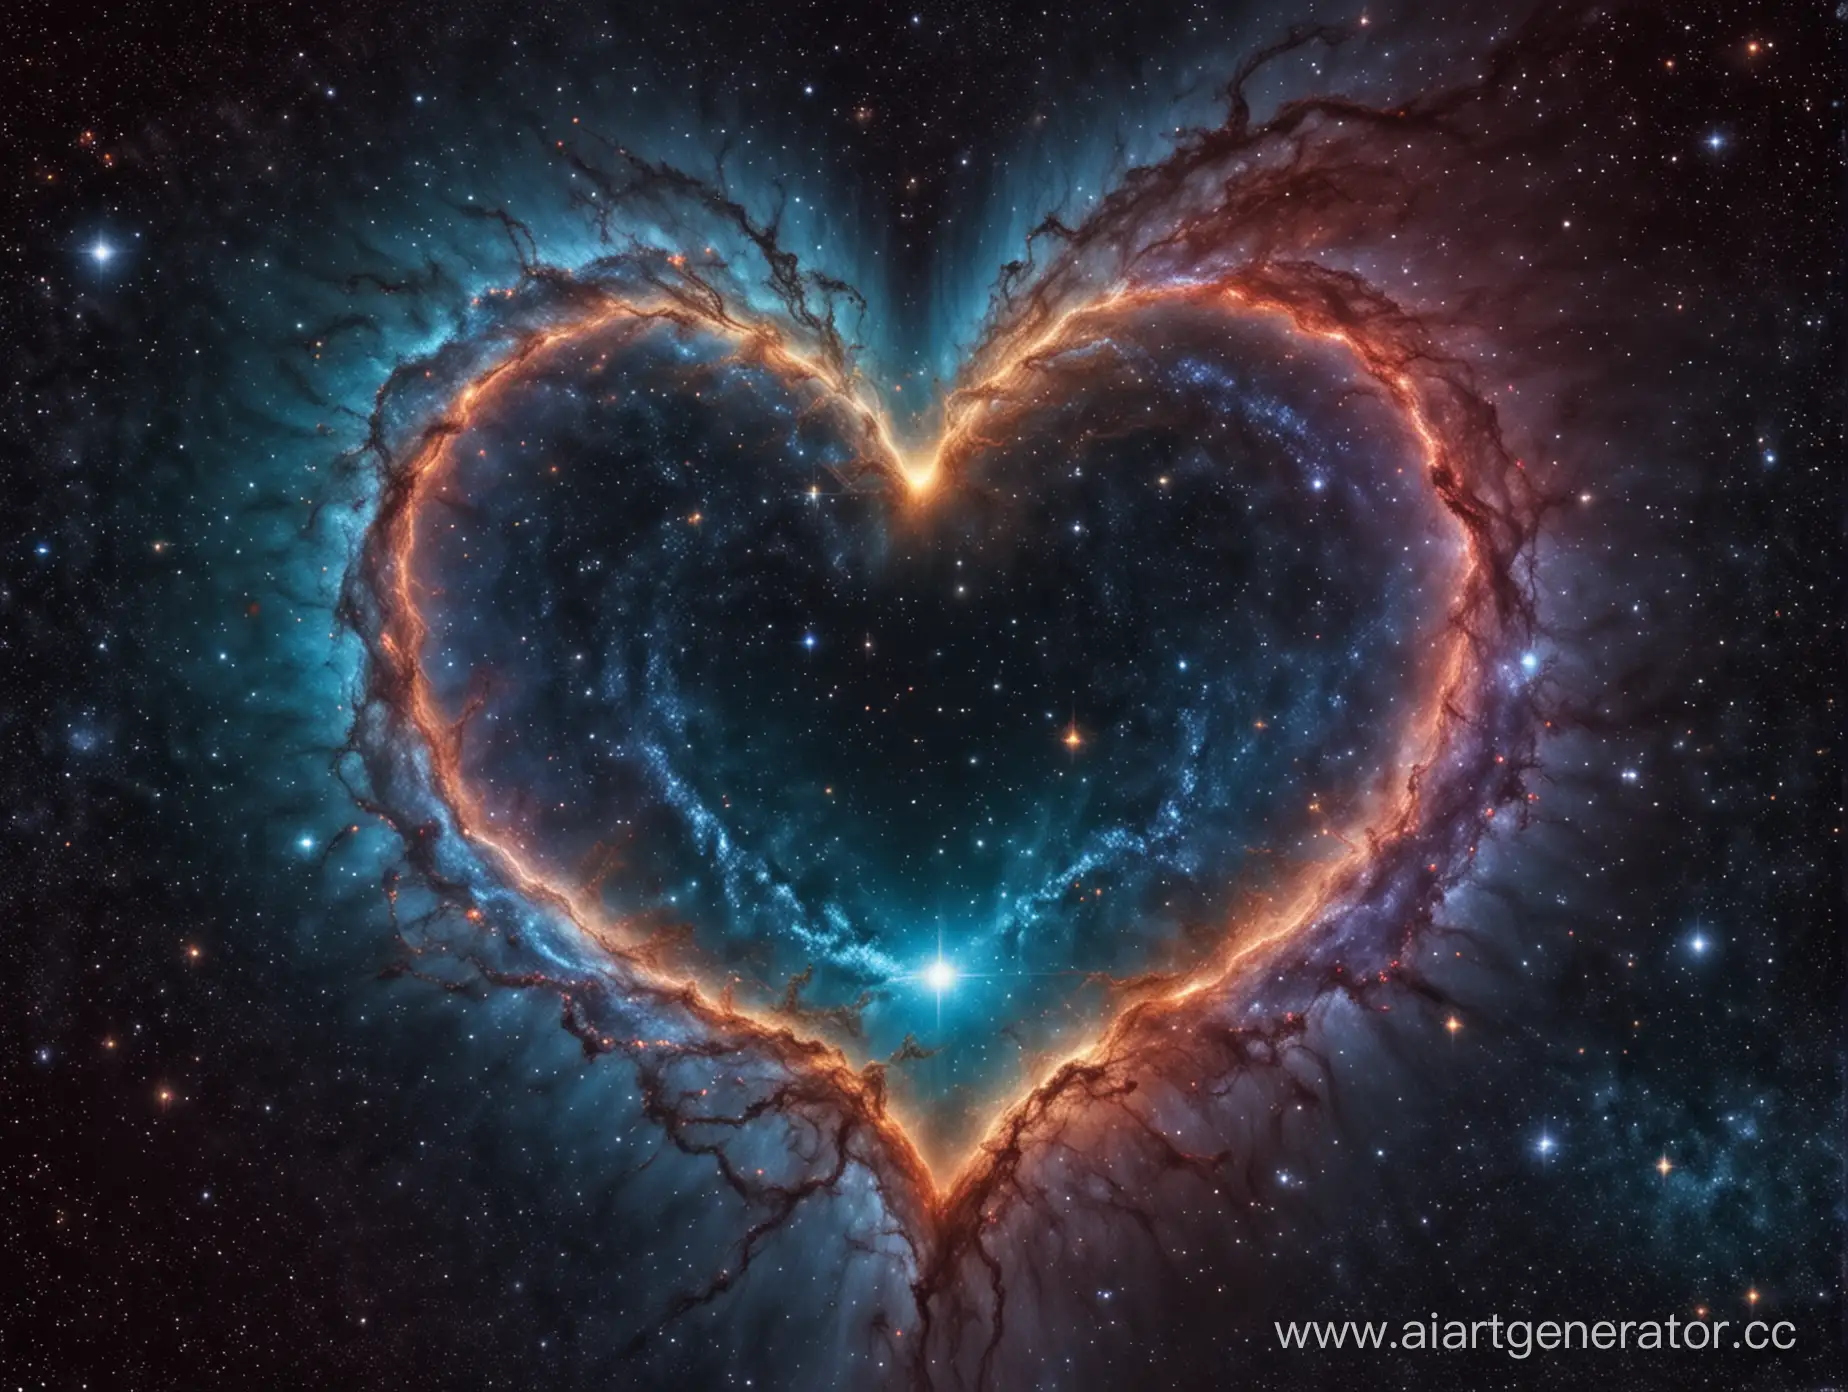 Сердце человека находится в середине кадра. На фоне космос и галактики